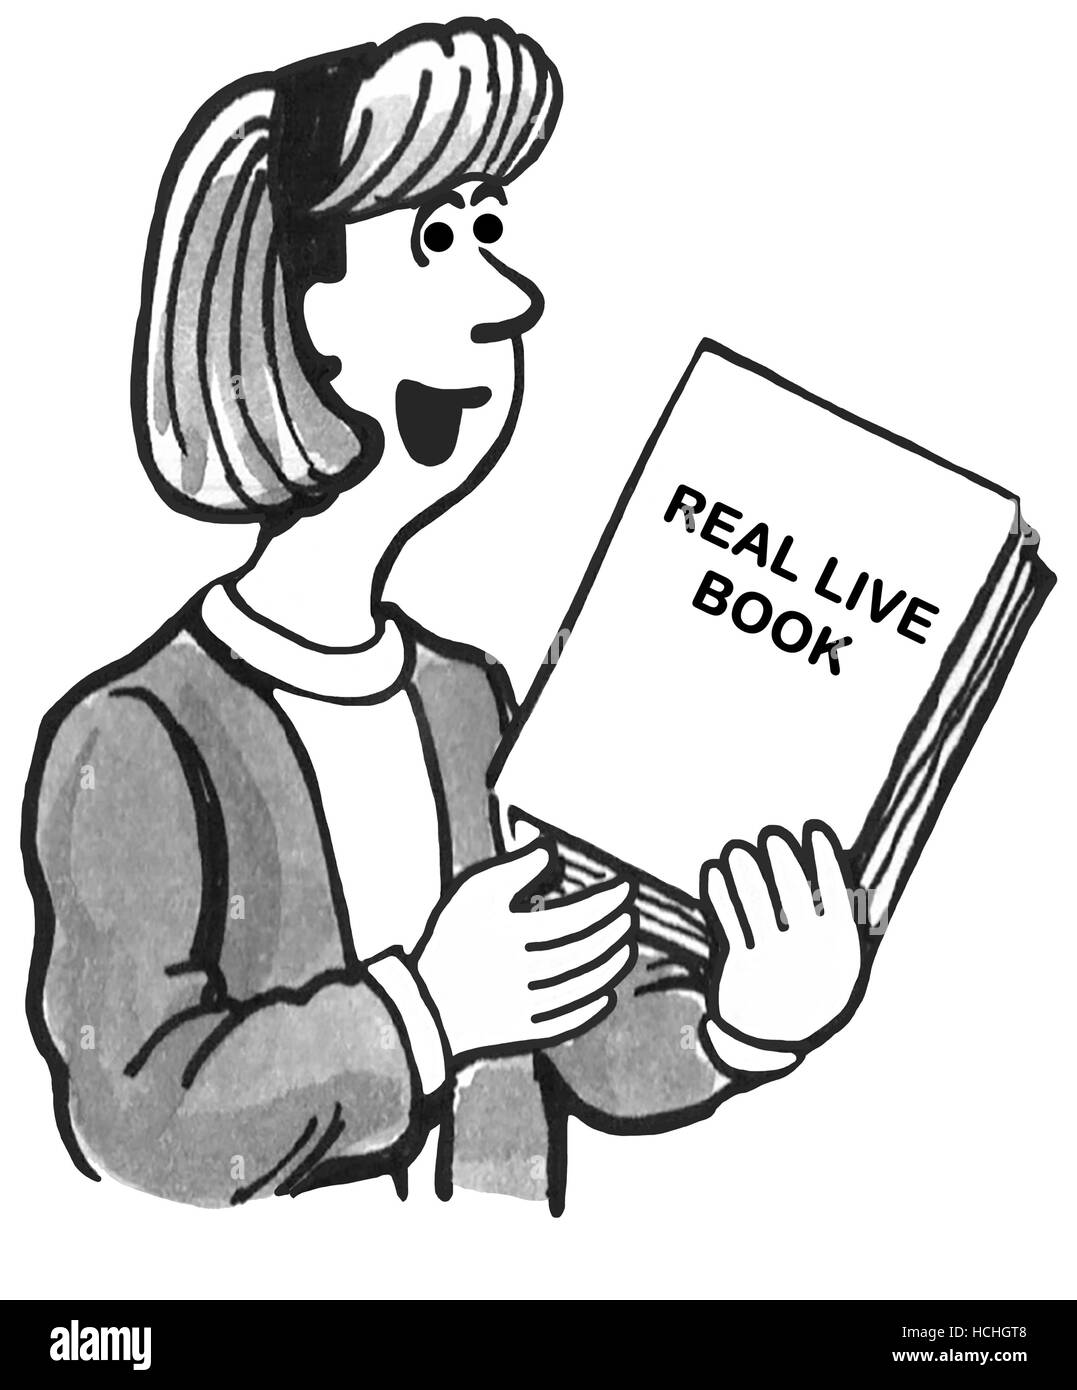 Educación en blanco y negro ilustración de una mujer sosteniendo un profesor real, vivir, libro de papel. Foto de stock